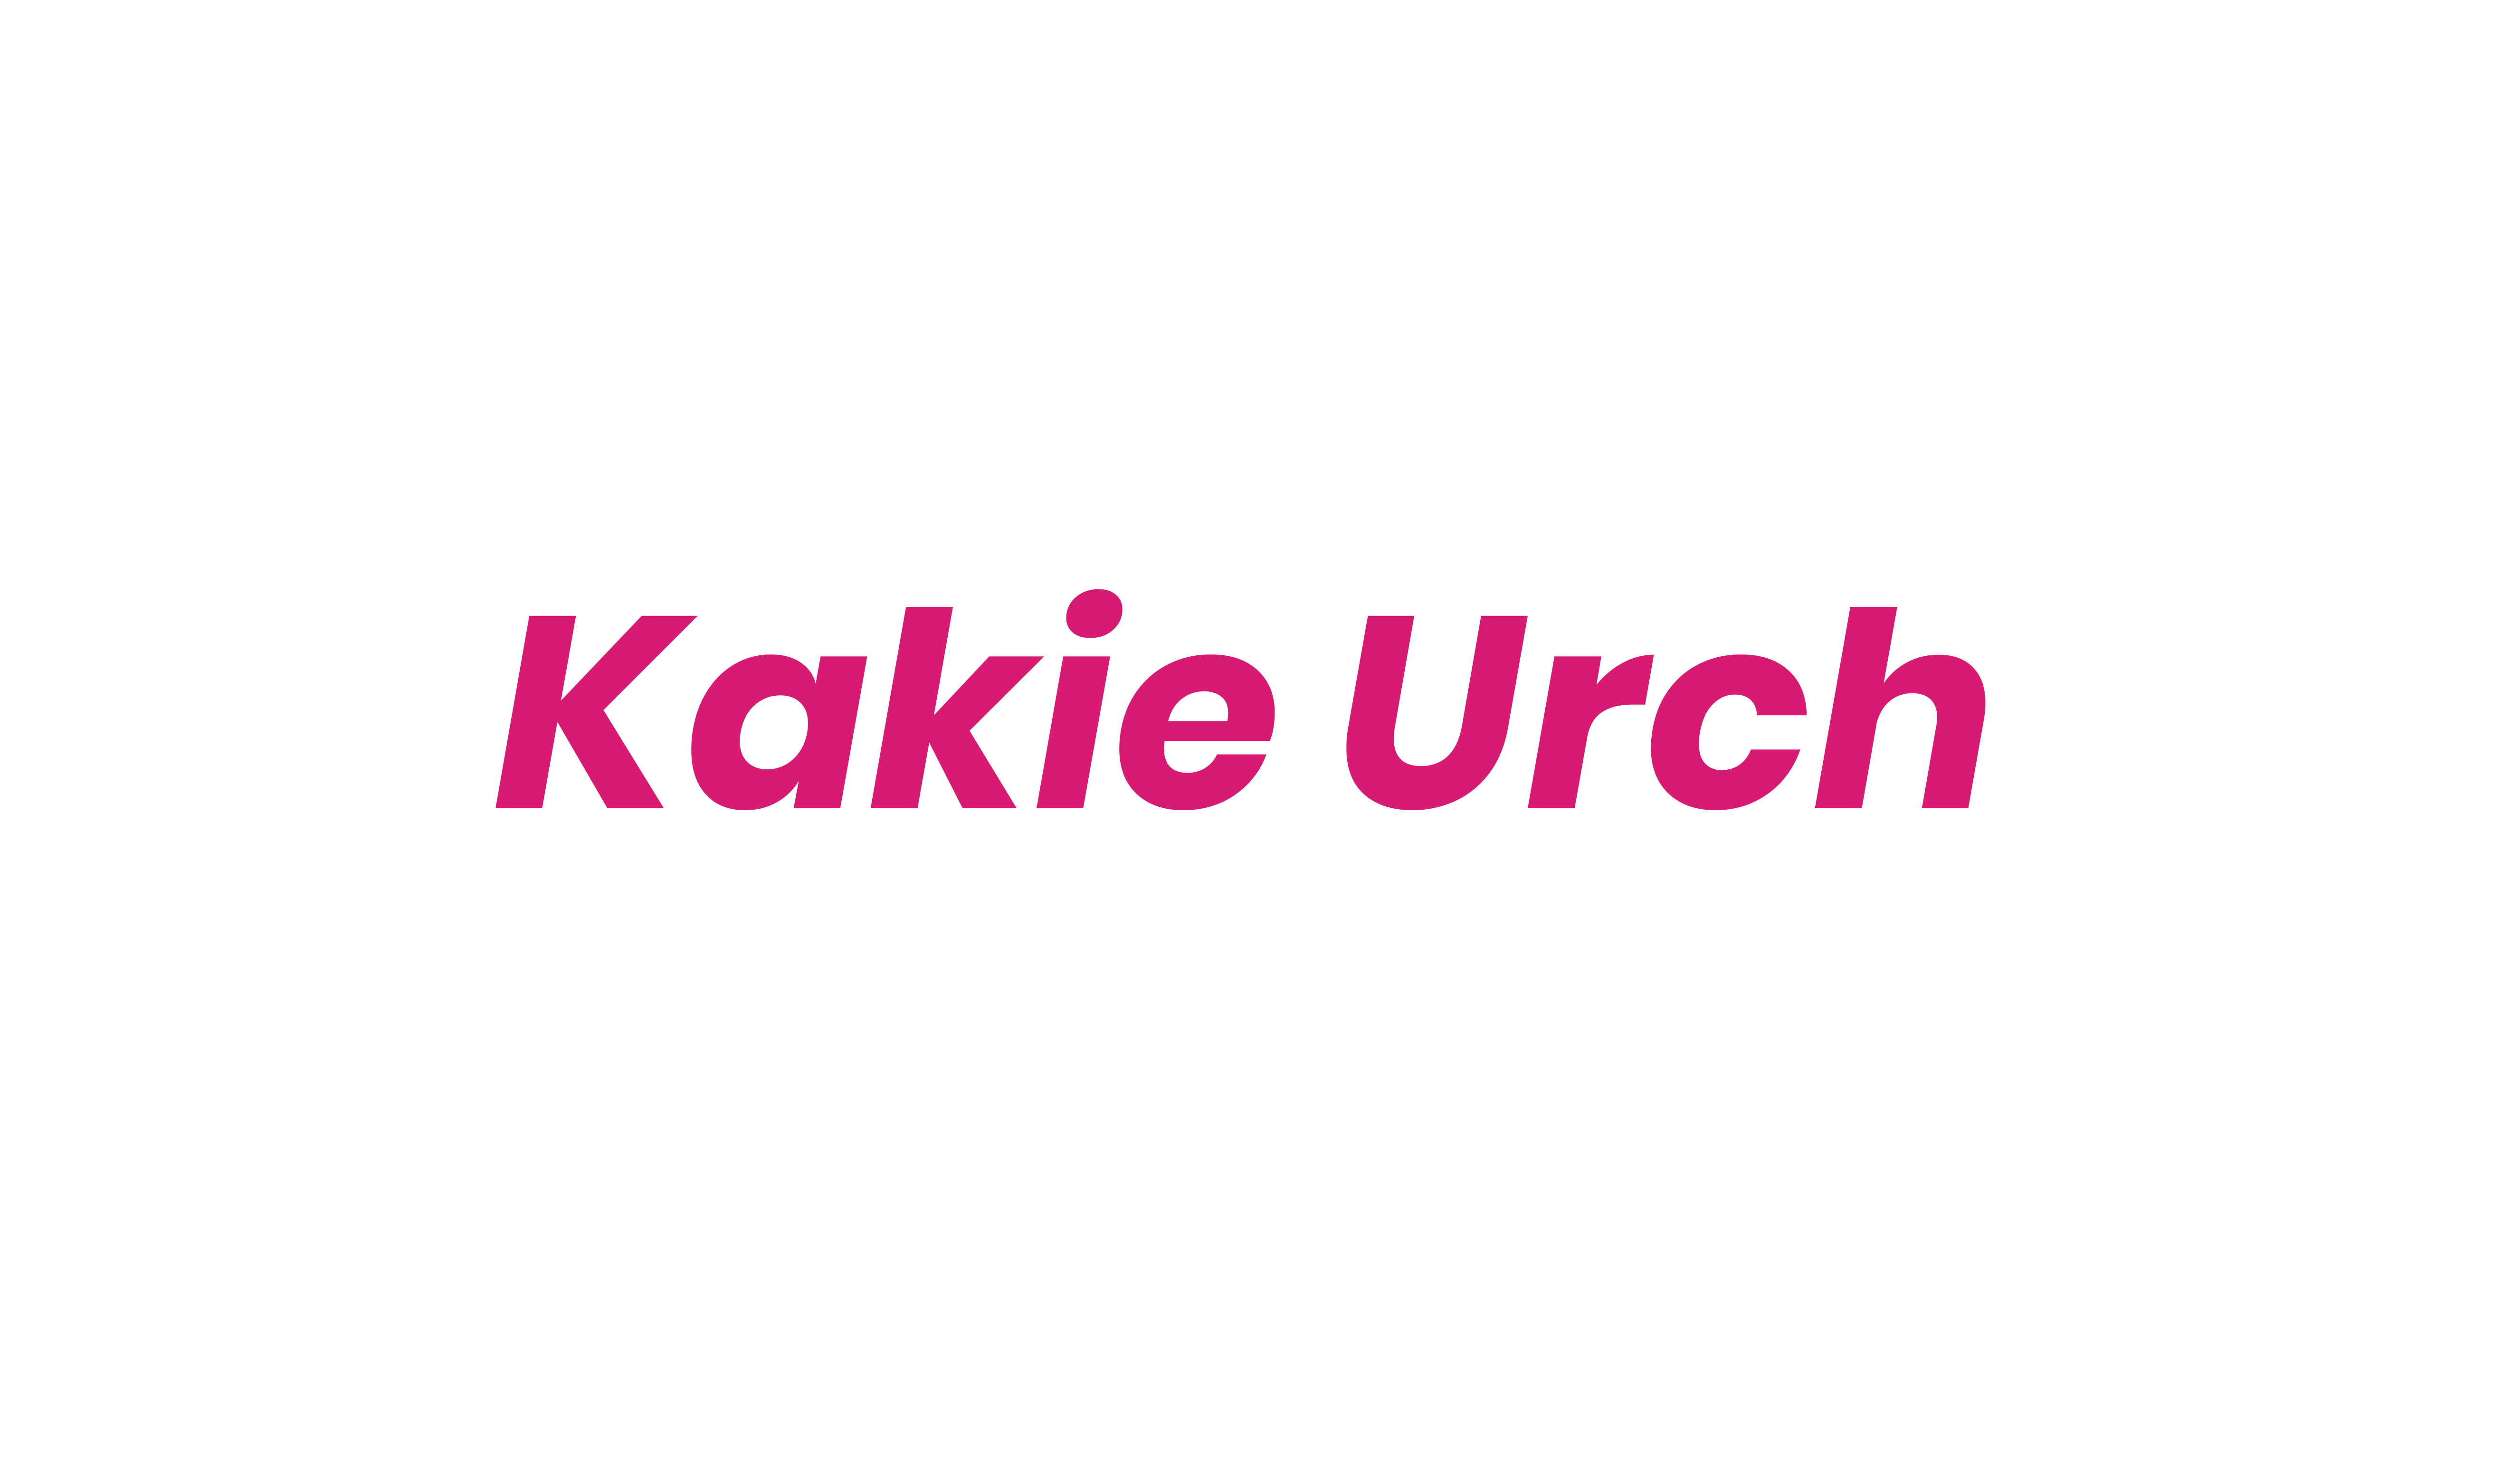 Kakie Urch